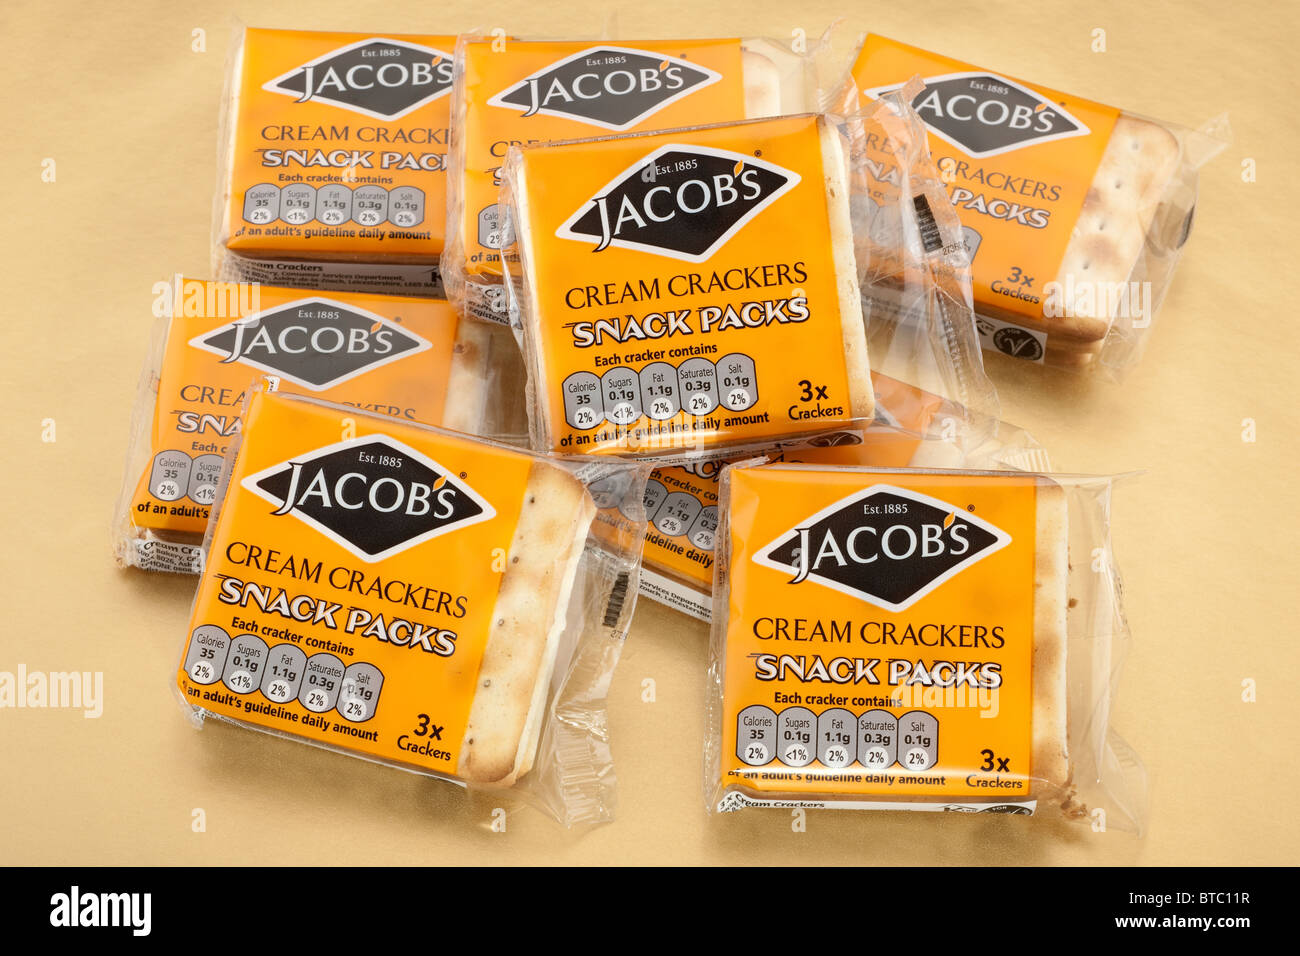 Jacob's cream crackers 8 boîtes de 3 craquelins collations Banque D'Images